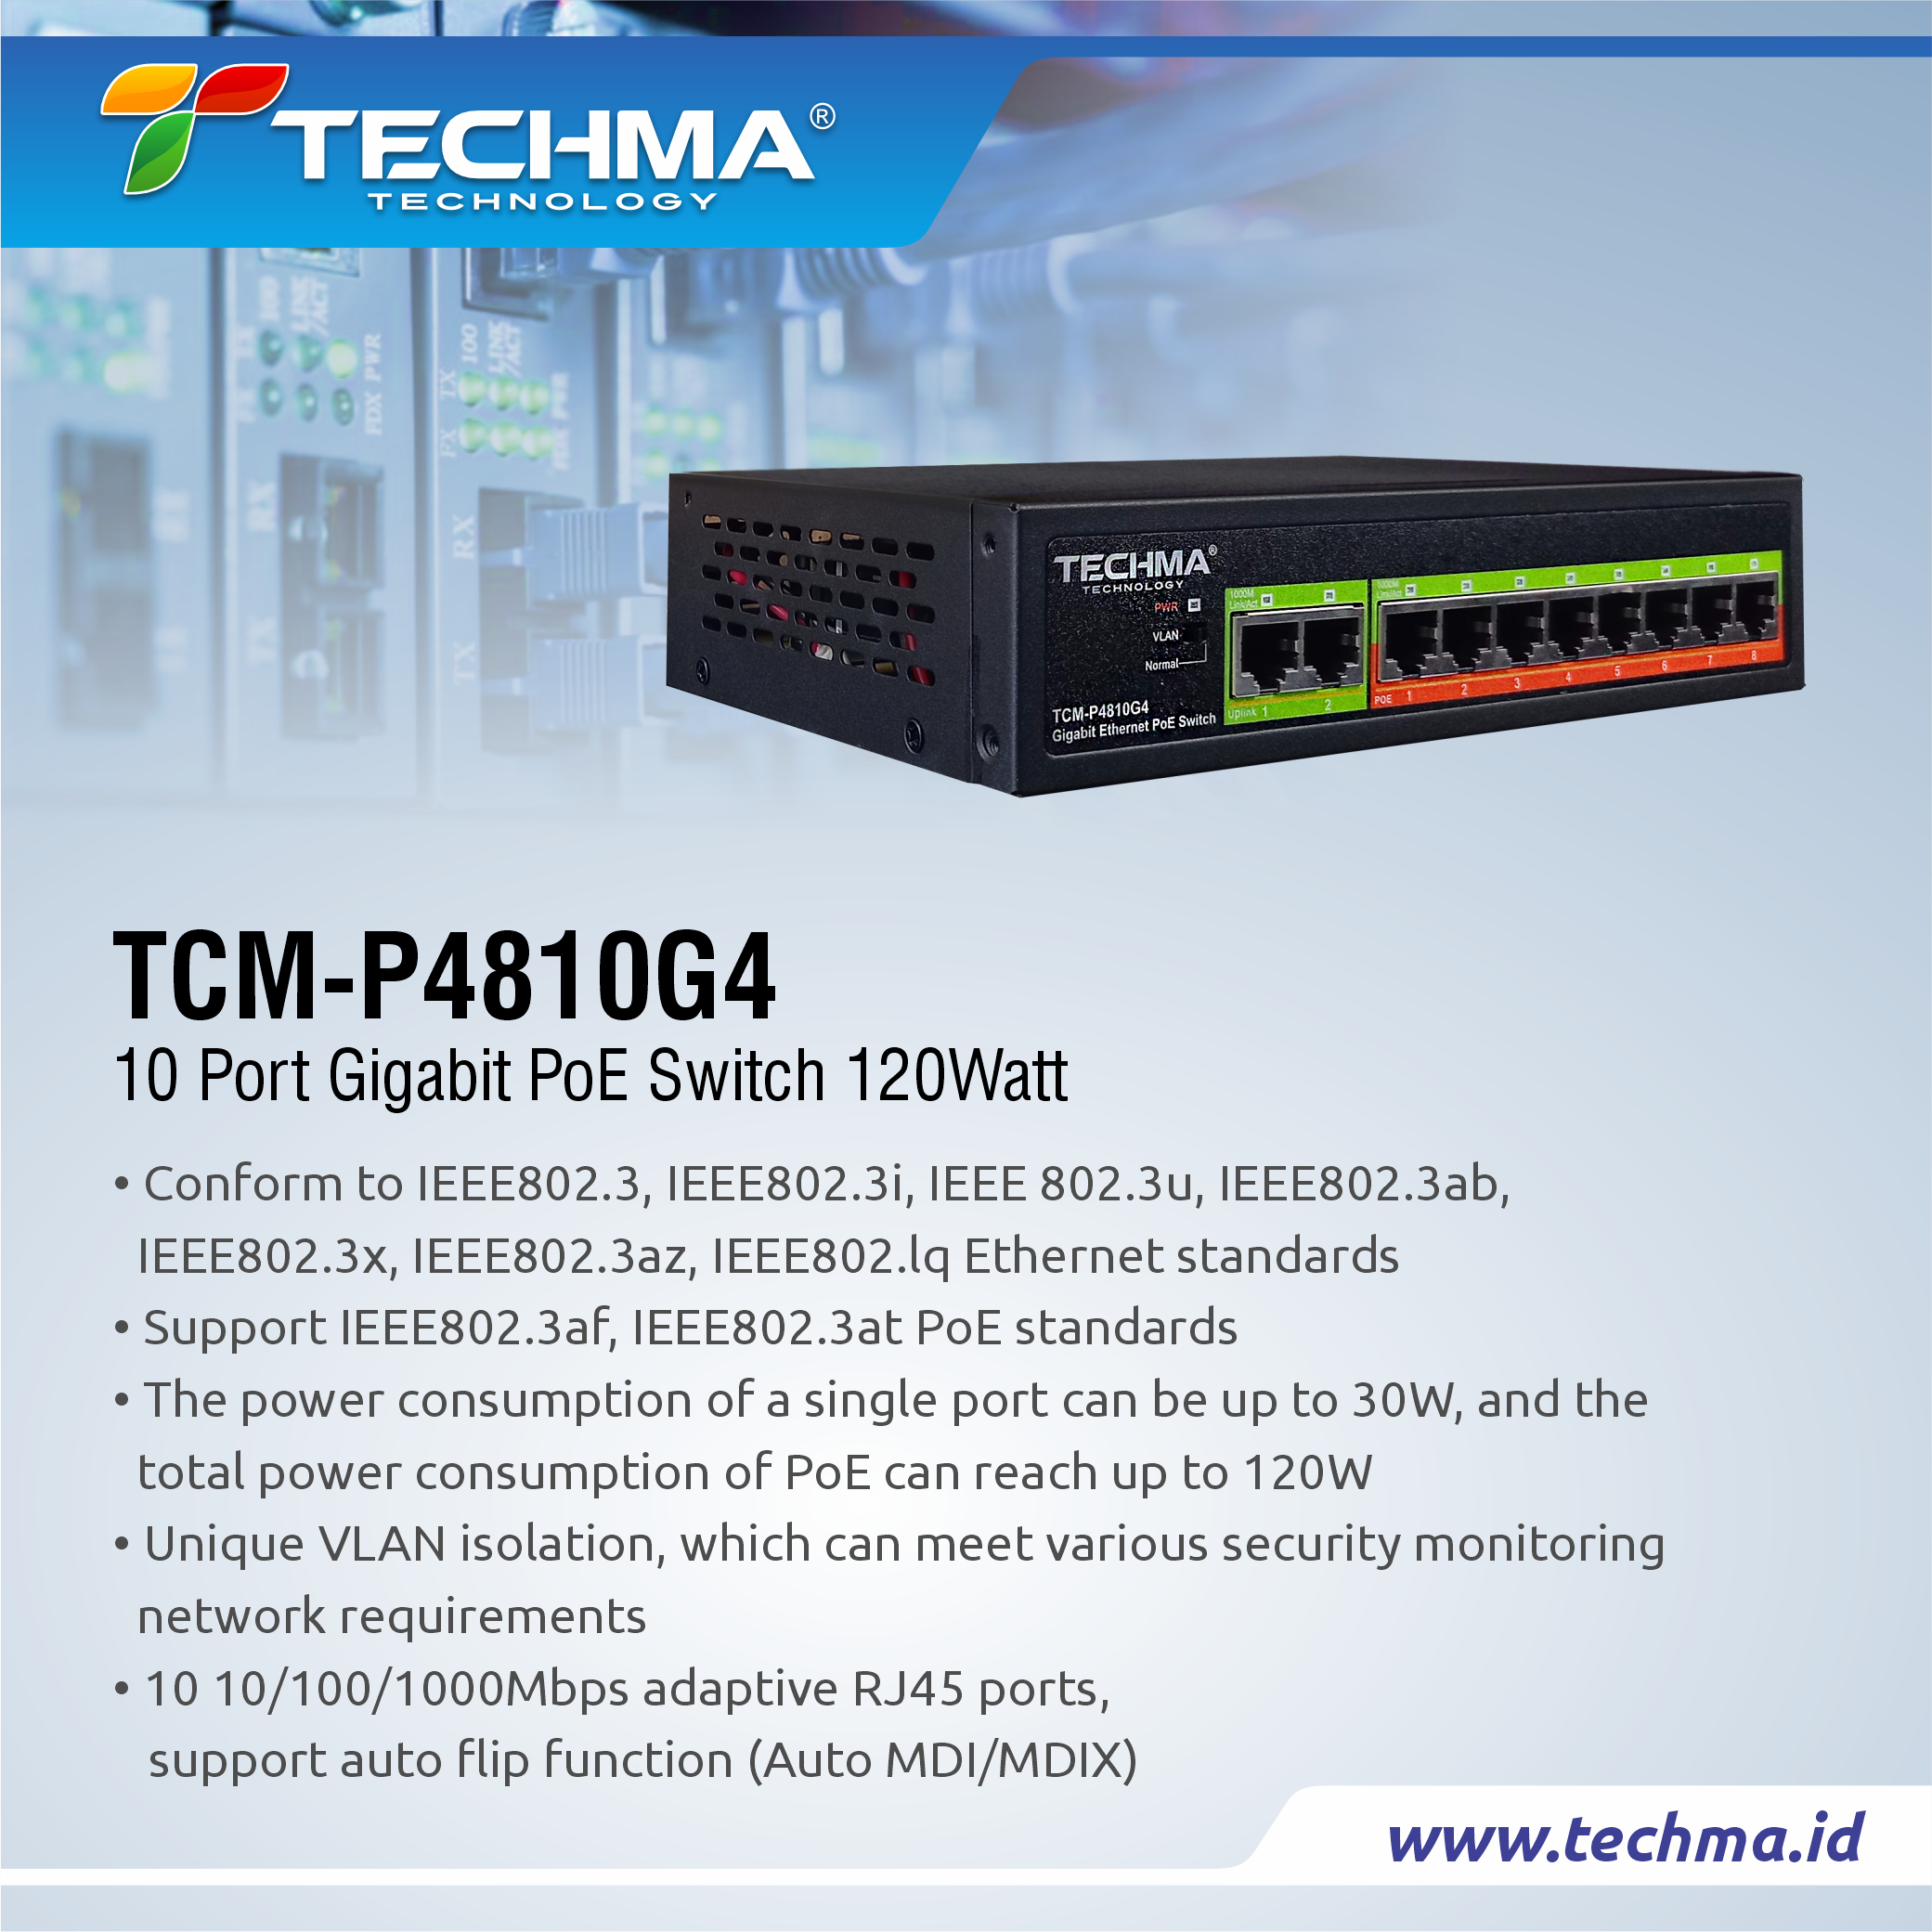 TCM-P4810G4 web 2